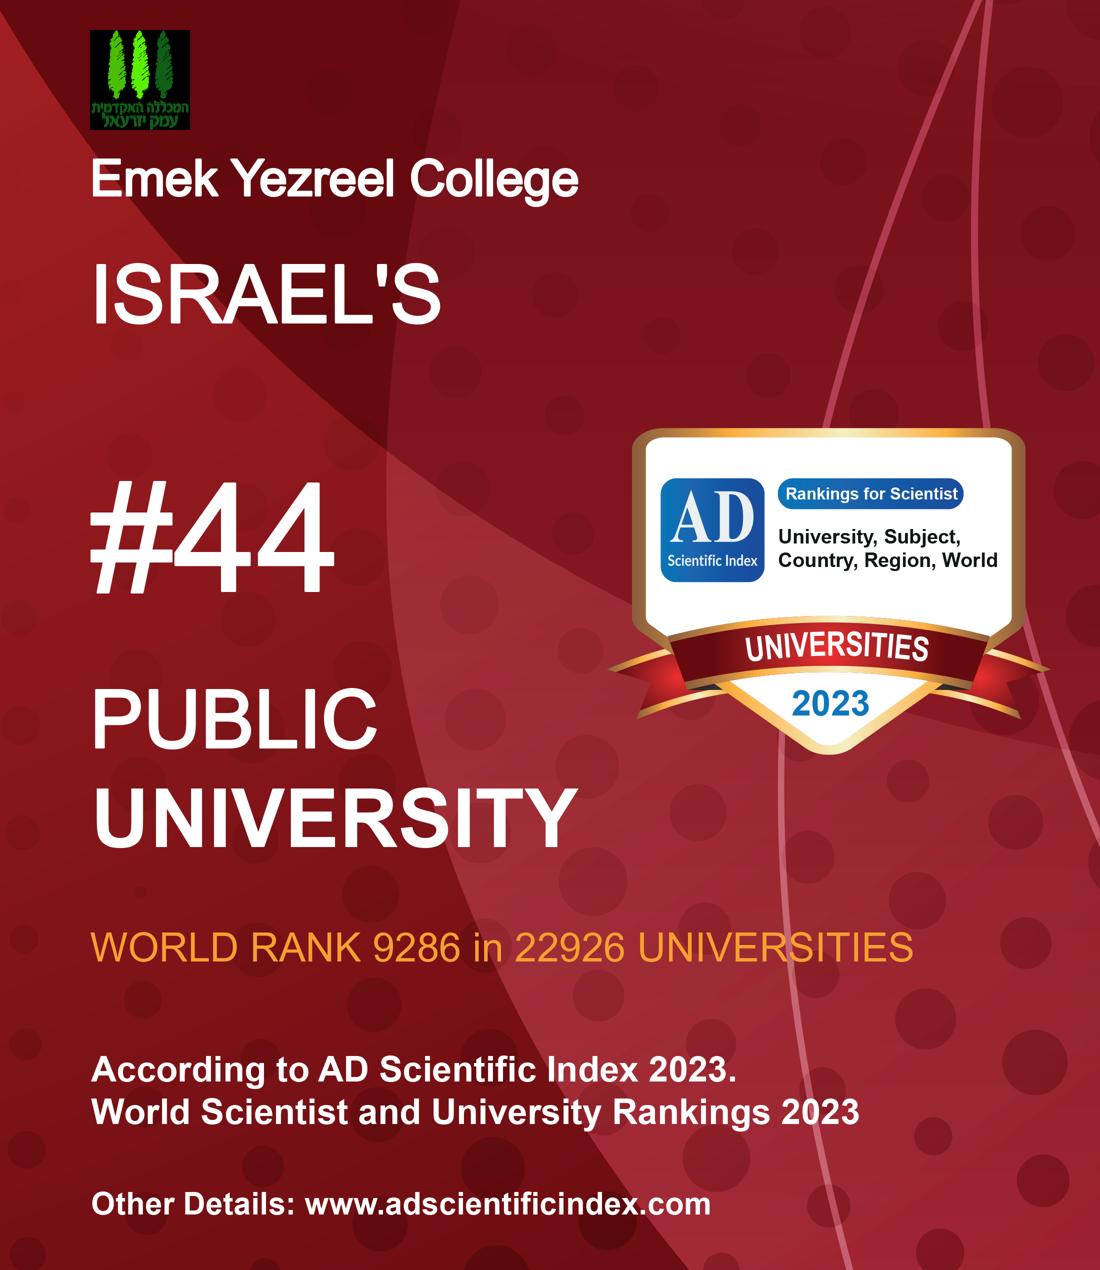 Emek Yezreel College